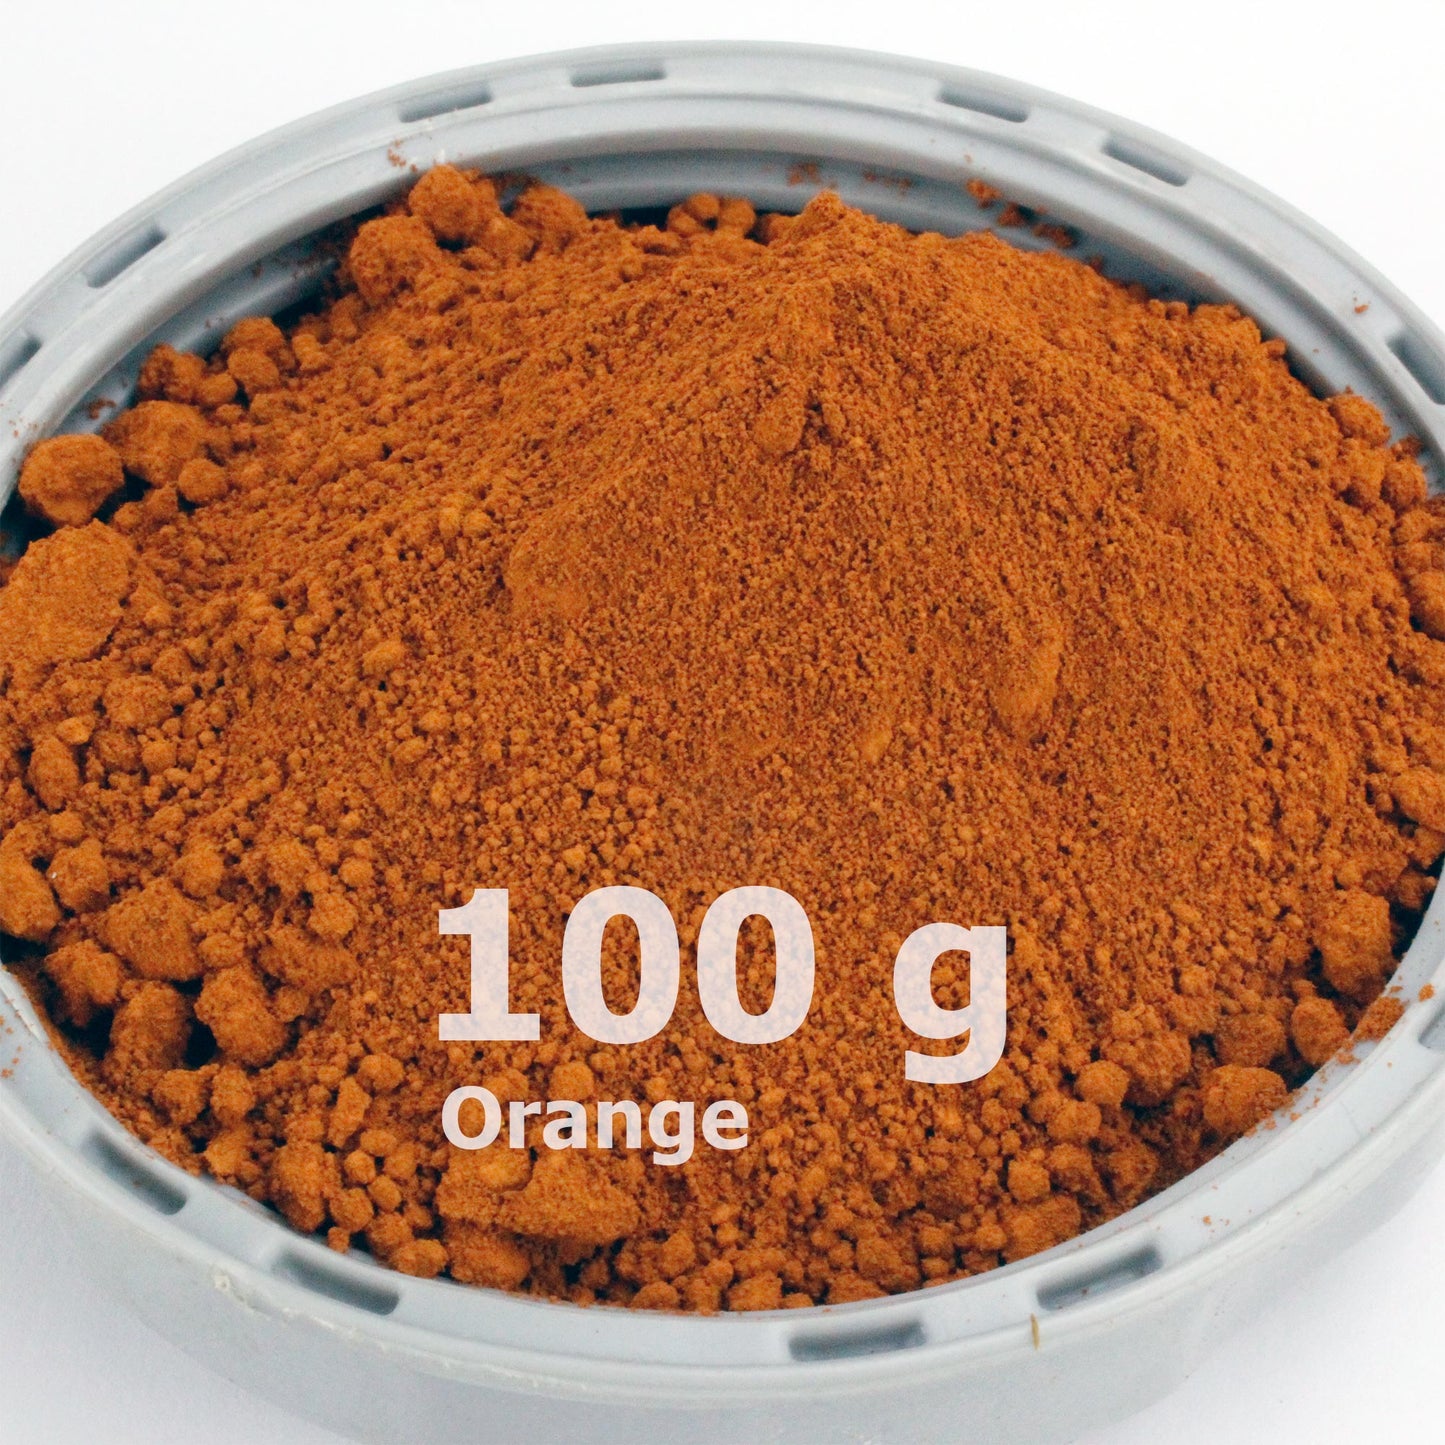 Orangepulver für Beton / Zement / Gips - 100g Probepackung